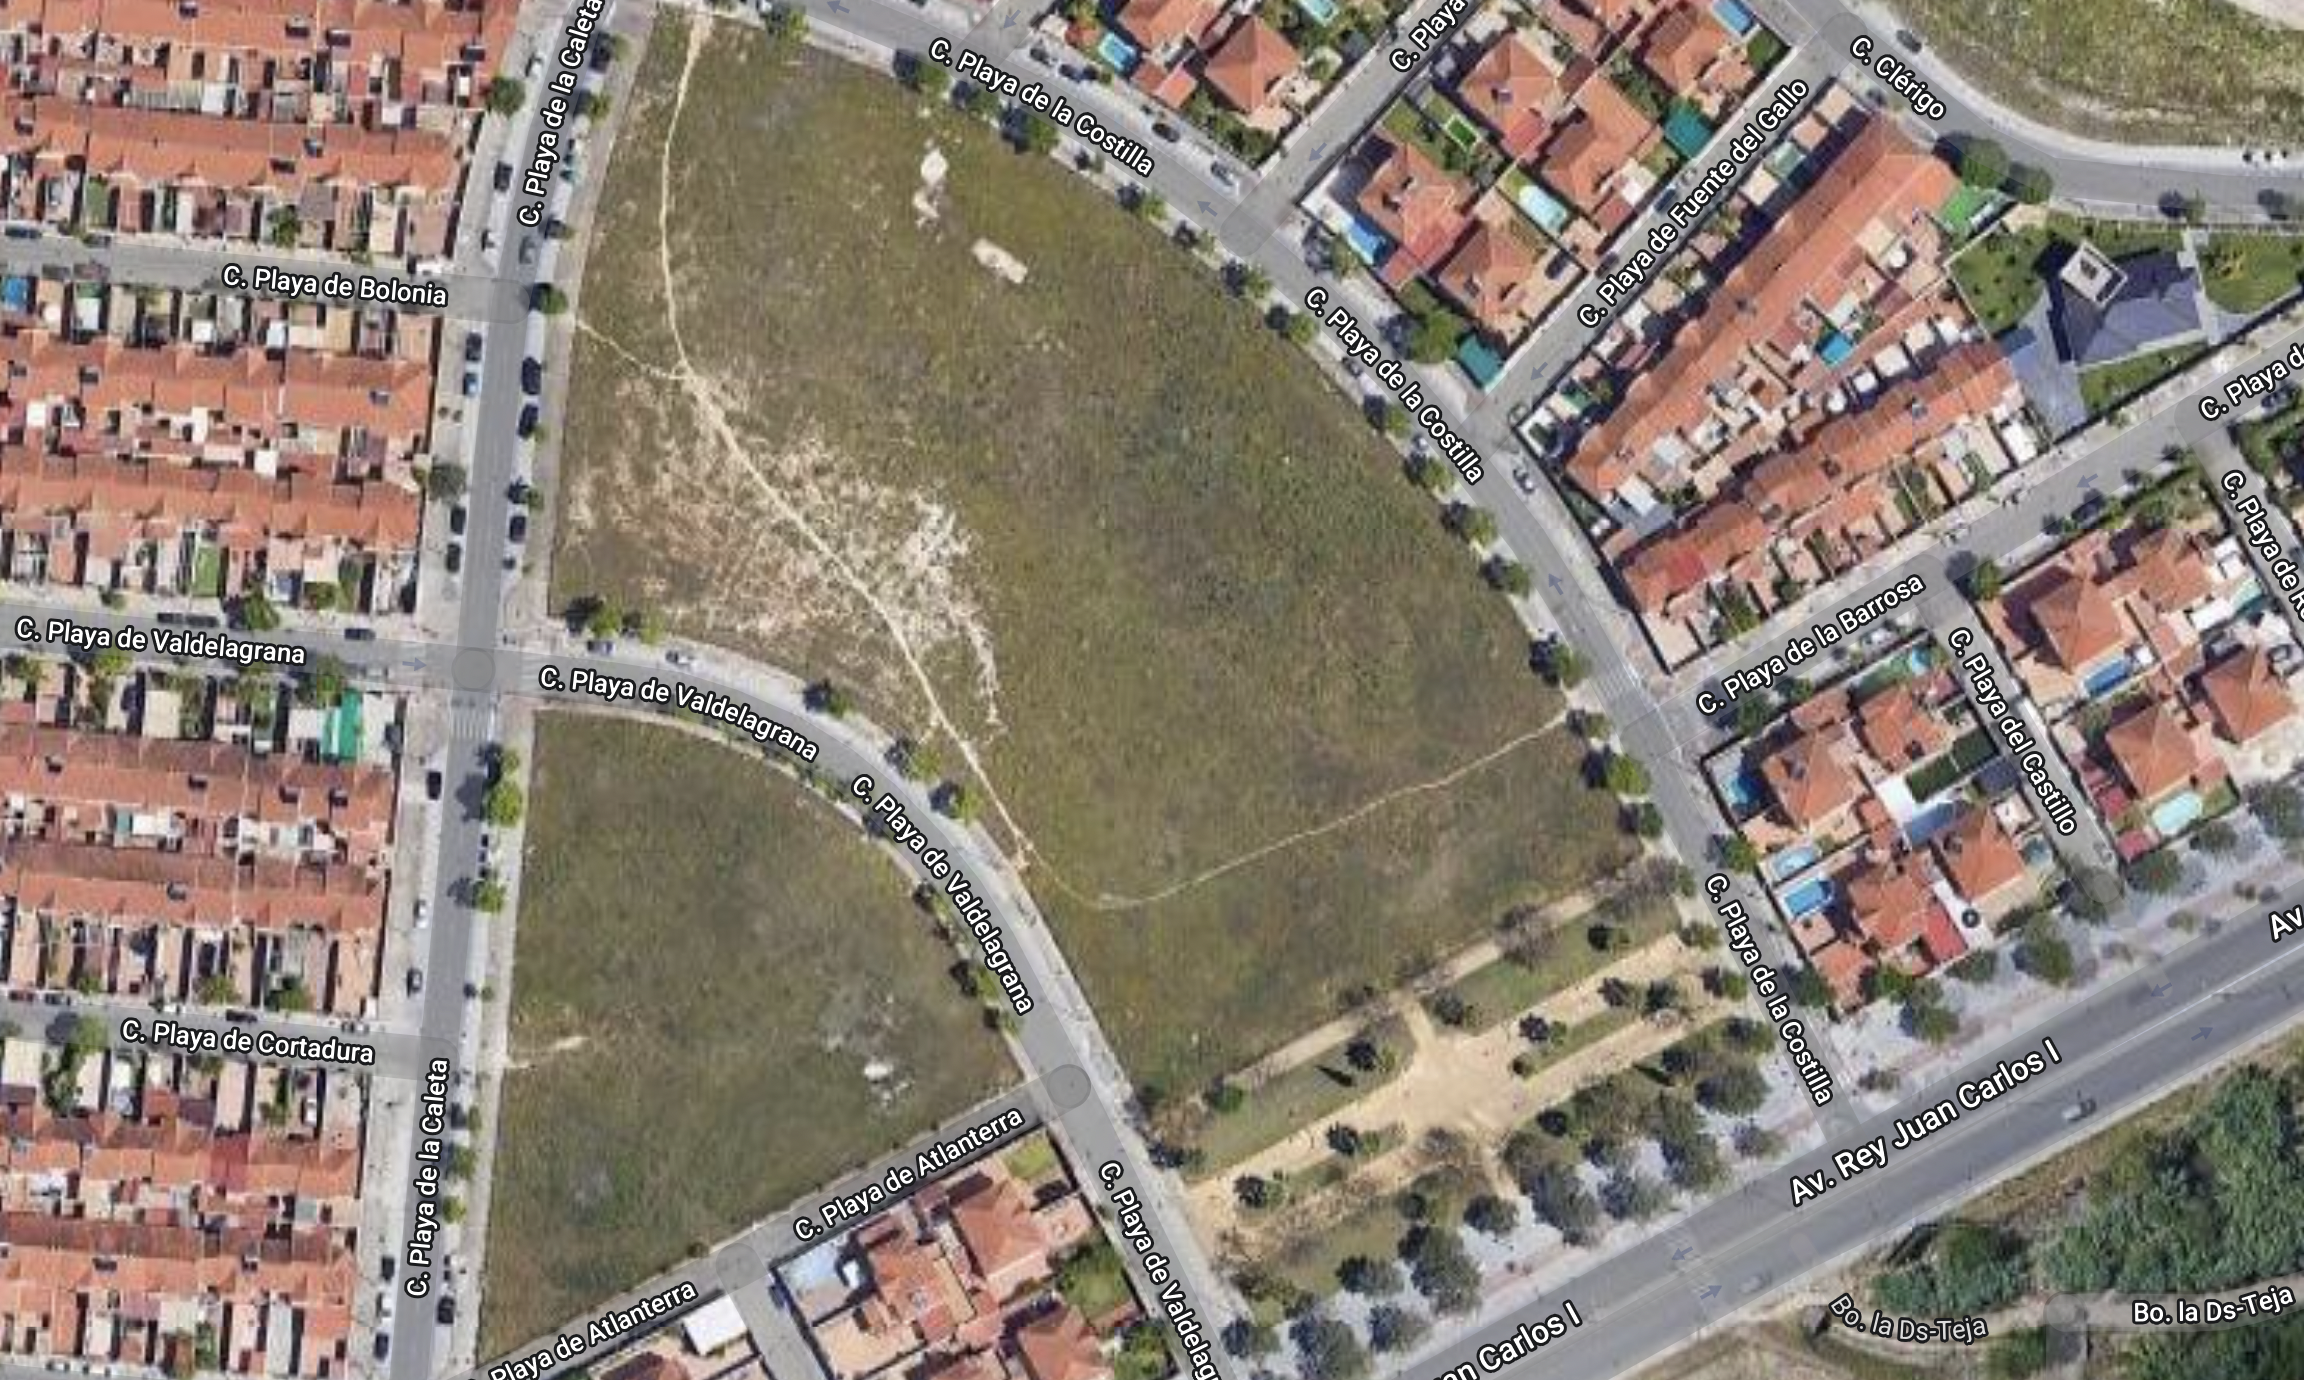 La gran zona deportiva junto a la avenida del 'Colesterol' en Jerez: voley playa y ping pong. En la imagen de Google Maps, la zona que se va a desarrollar.